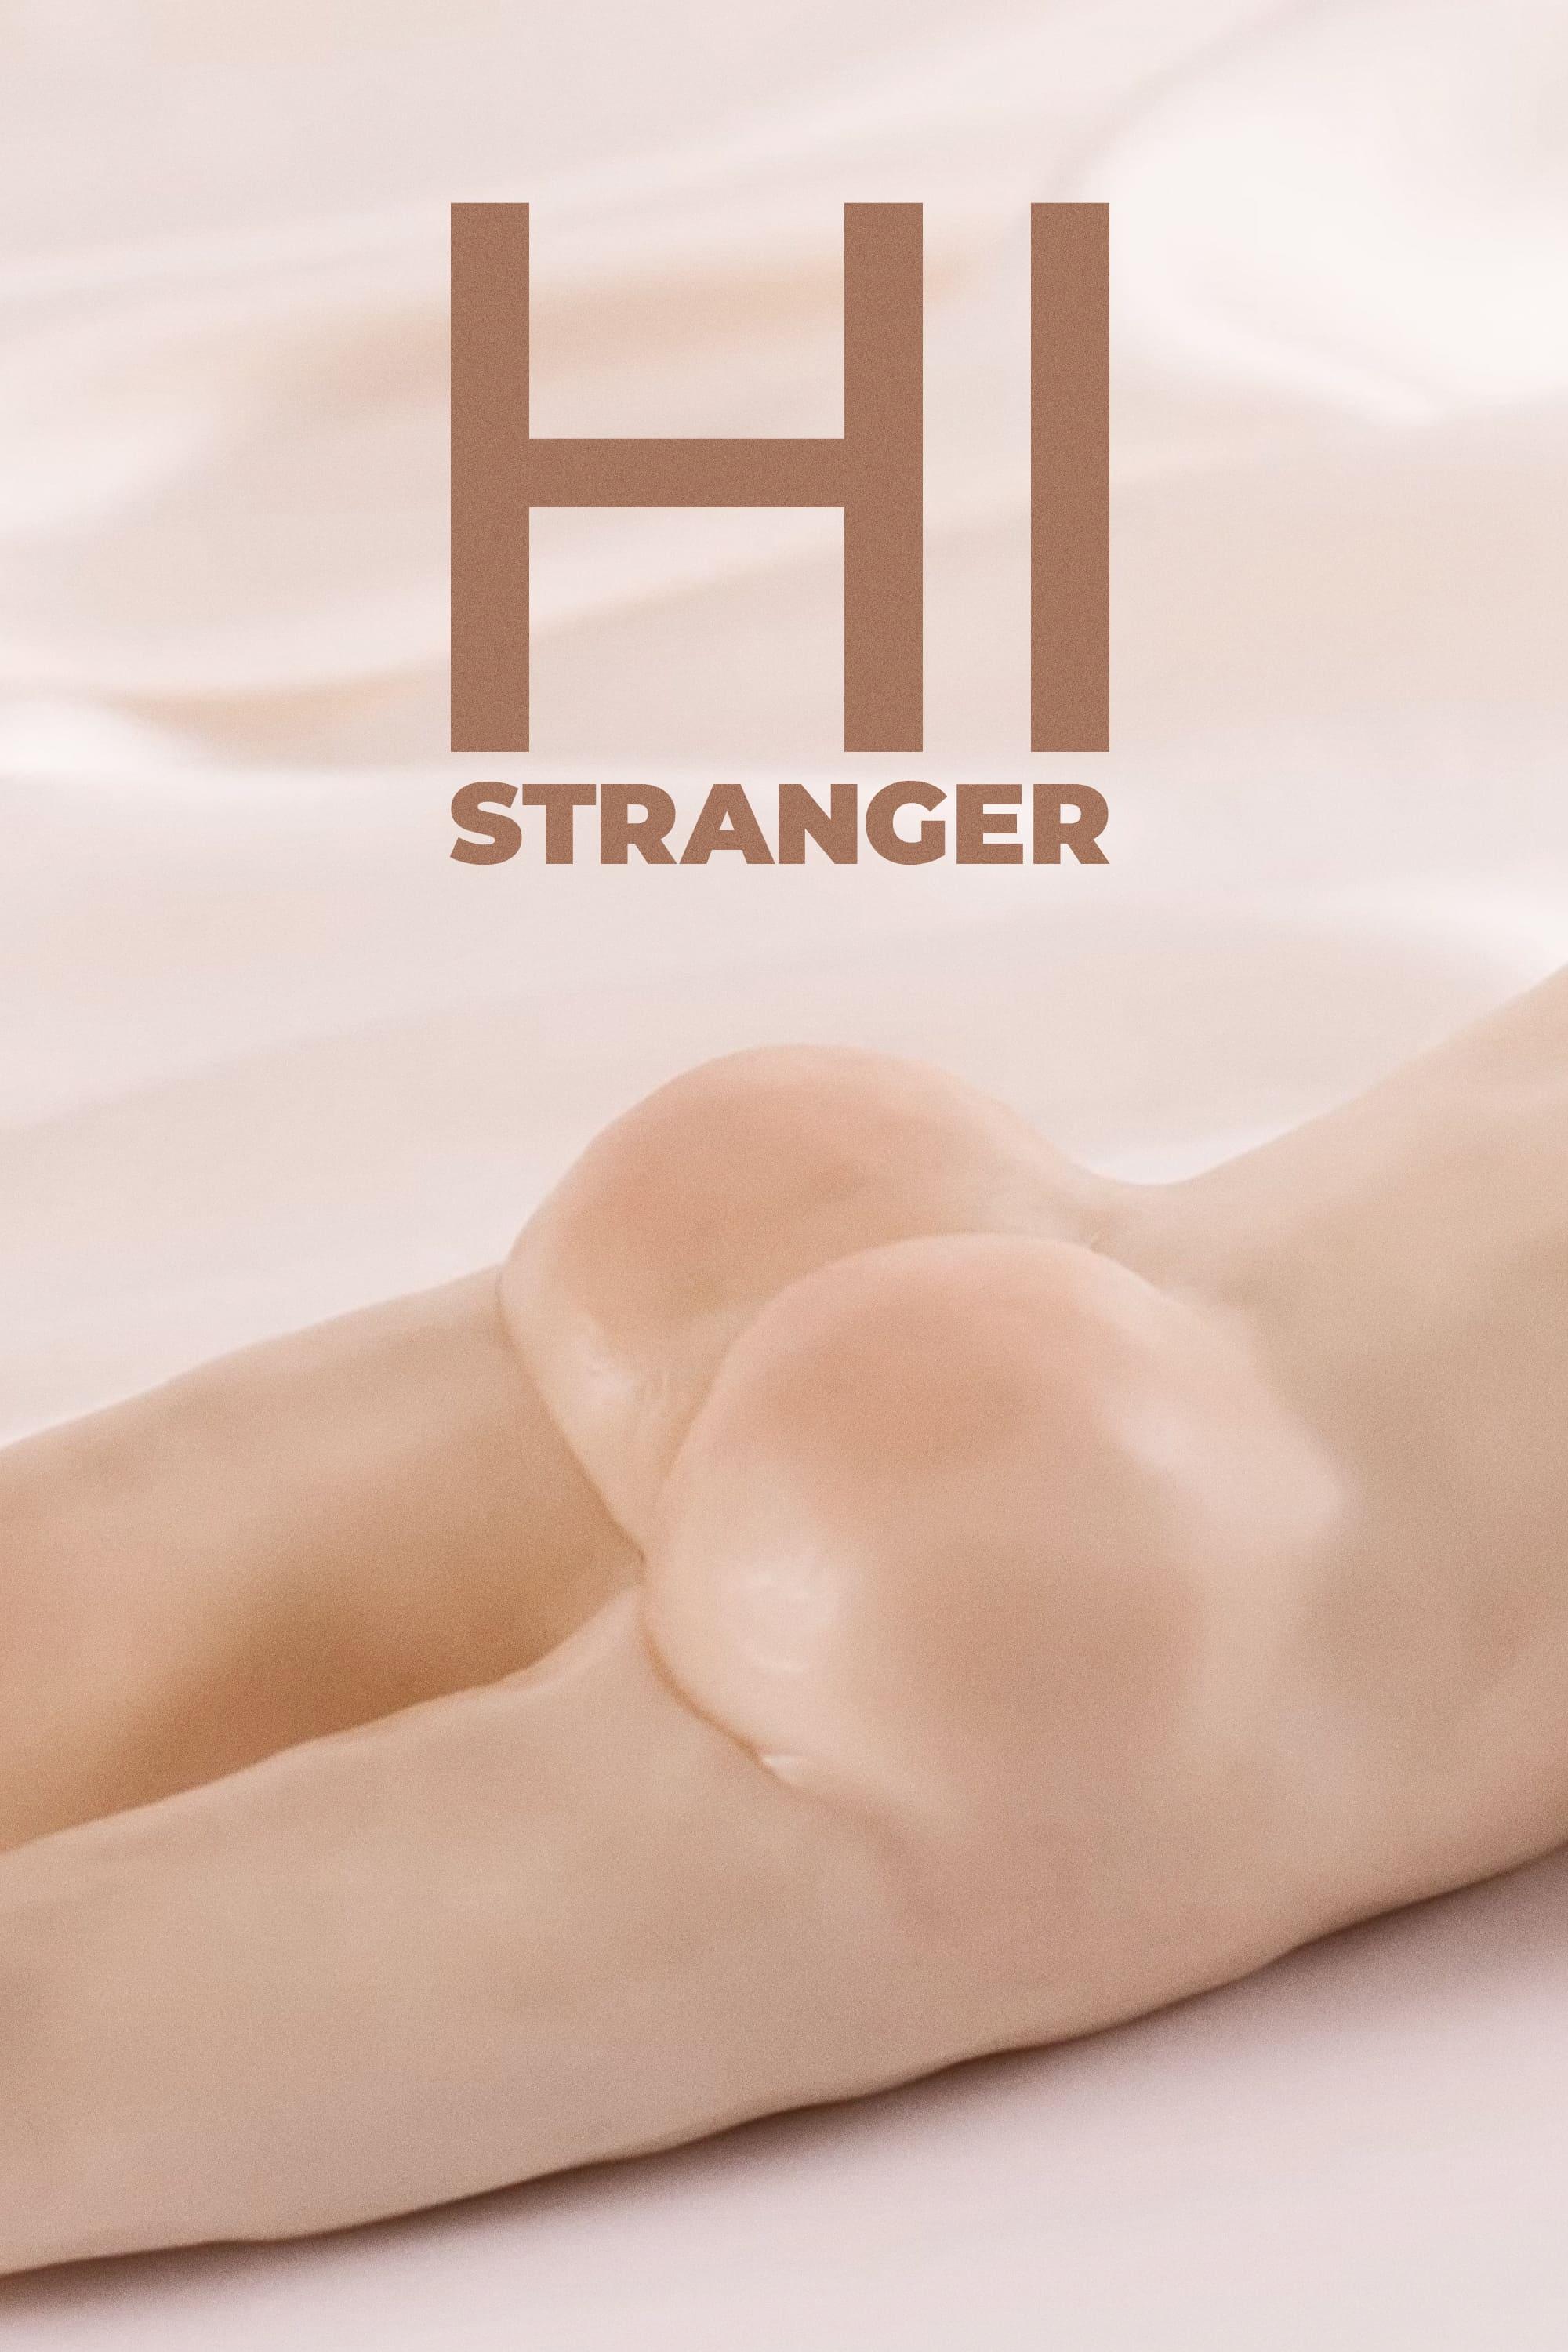 Hi Stranger poster